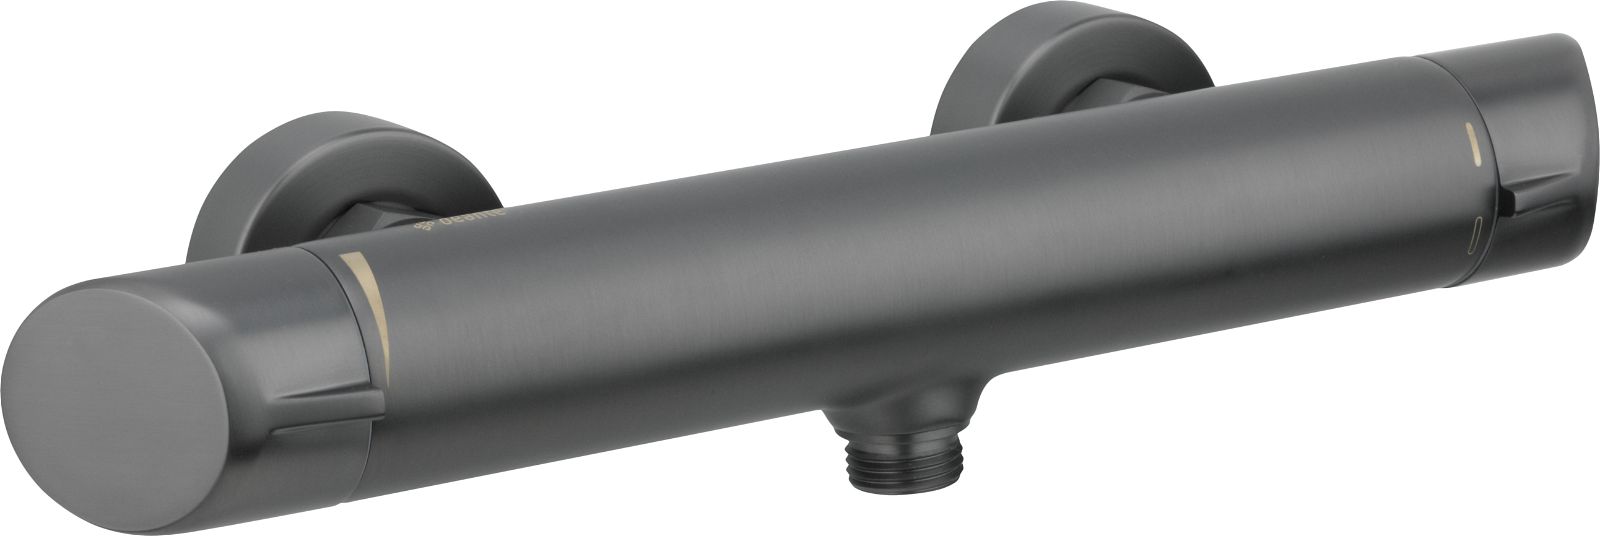 Shower mixer, wall-mounted - BQA_D40M - Główne zdjęcie produktowe